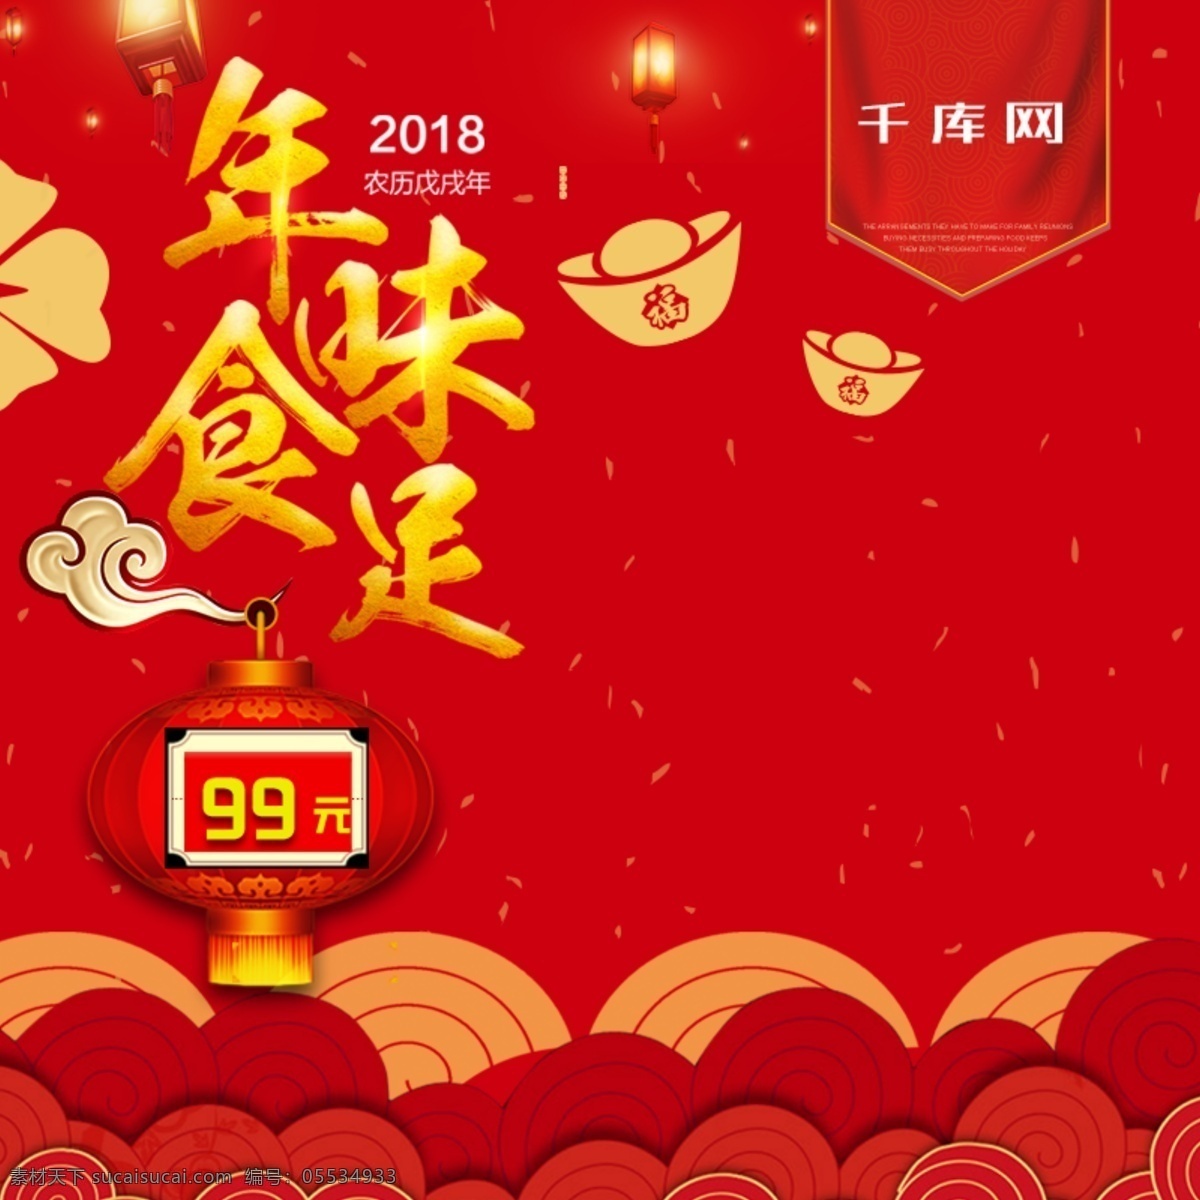 天猫 淘宝 红色 新年 促销 食品 坚果 直通车 千库原创 主图 电商 新年不打烊 春节